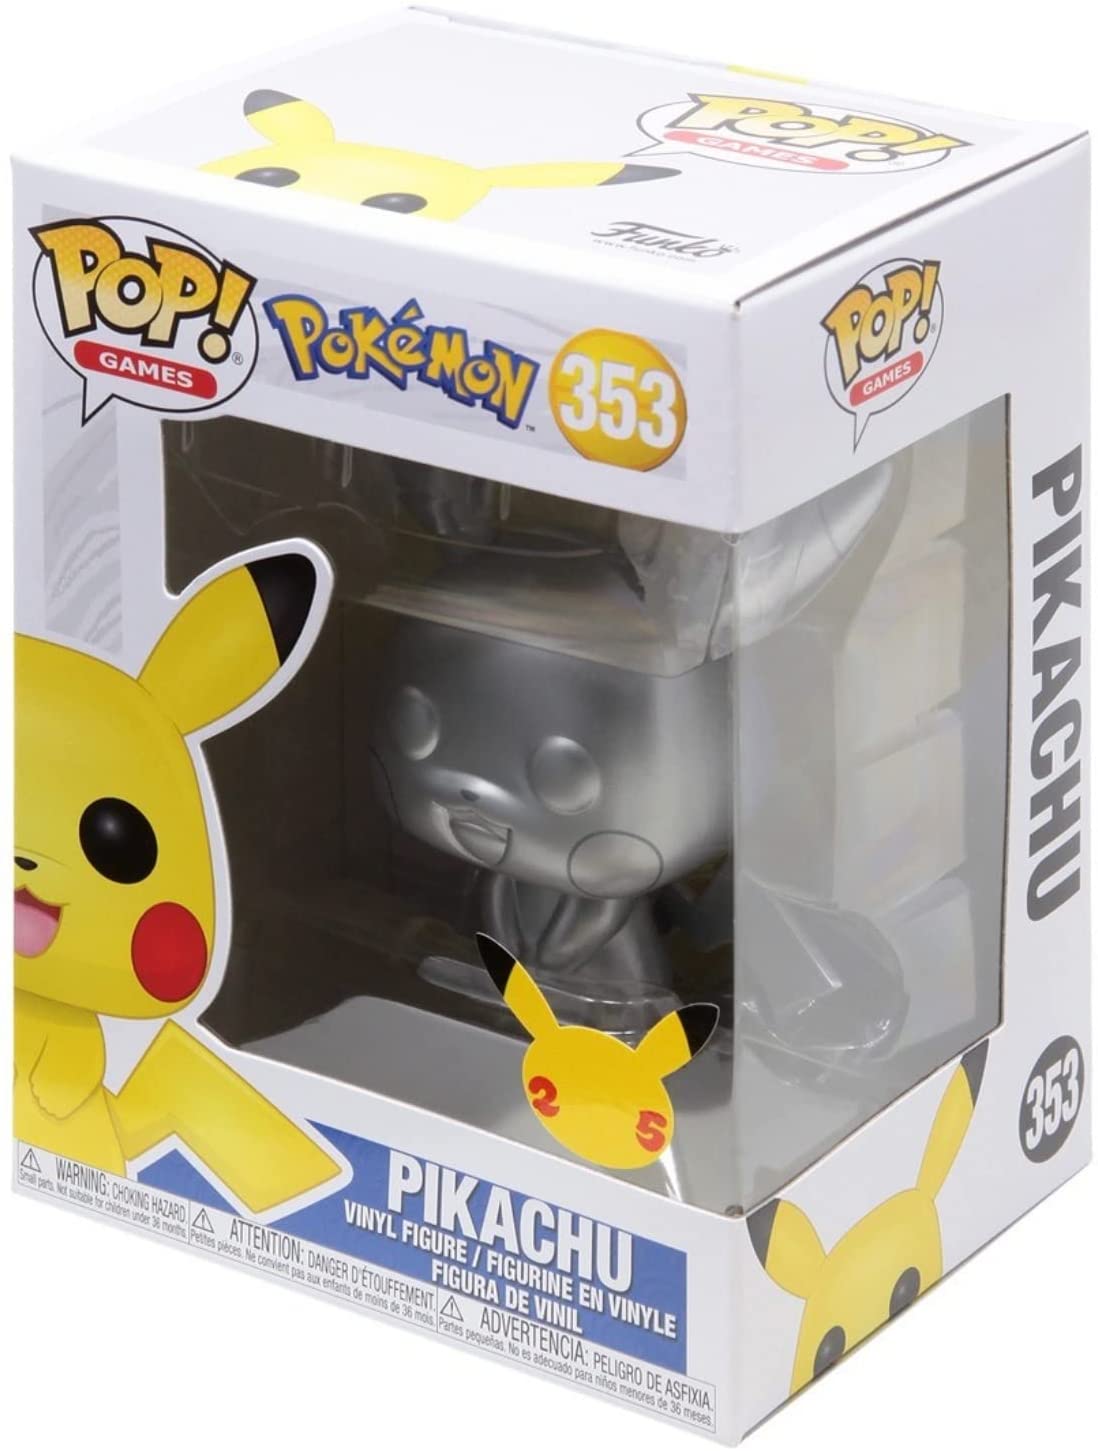 Funko Pop! Games: Pokemon - Pikachu – John's Total Ent.